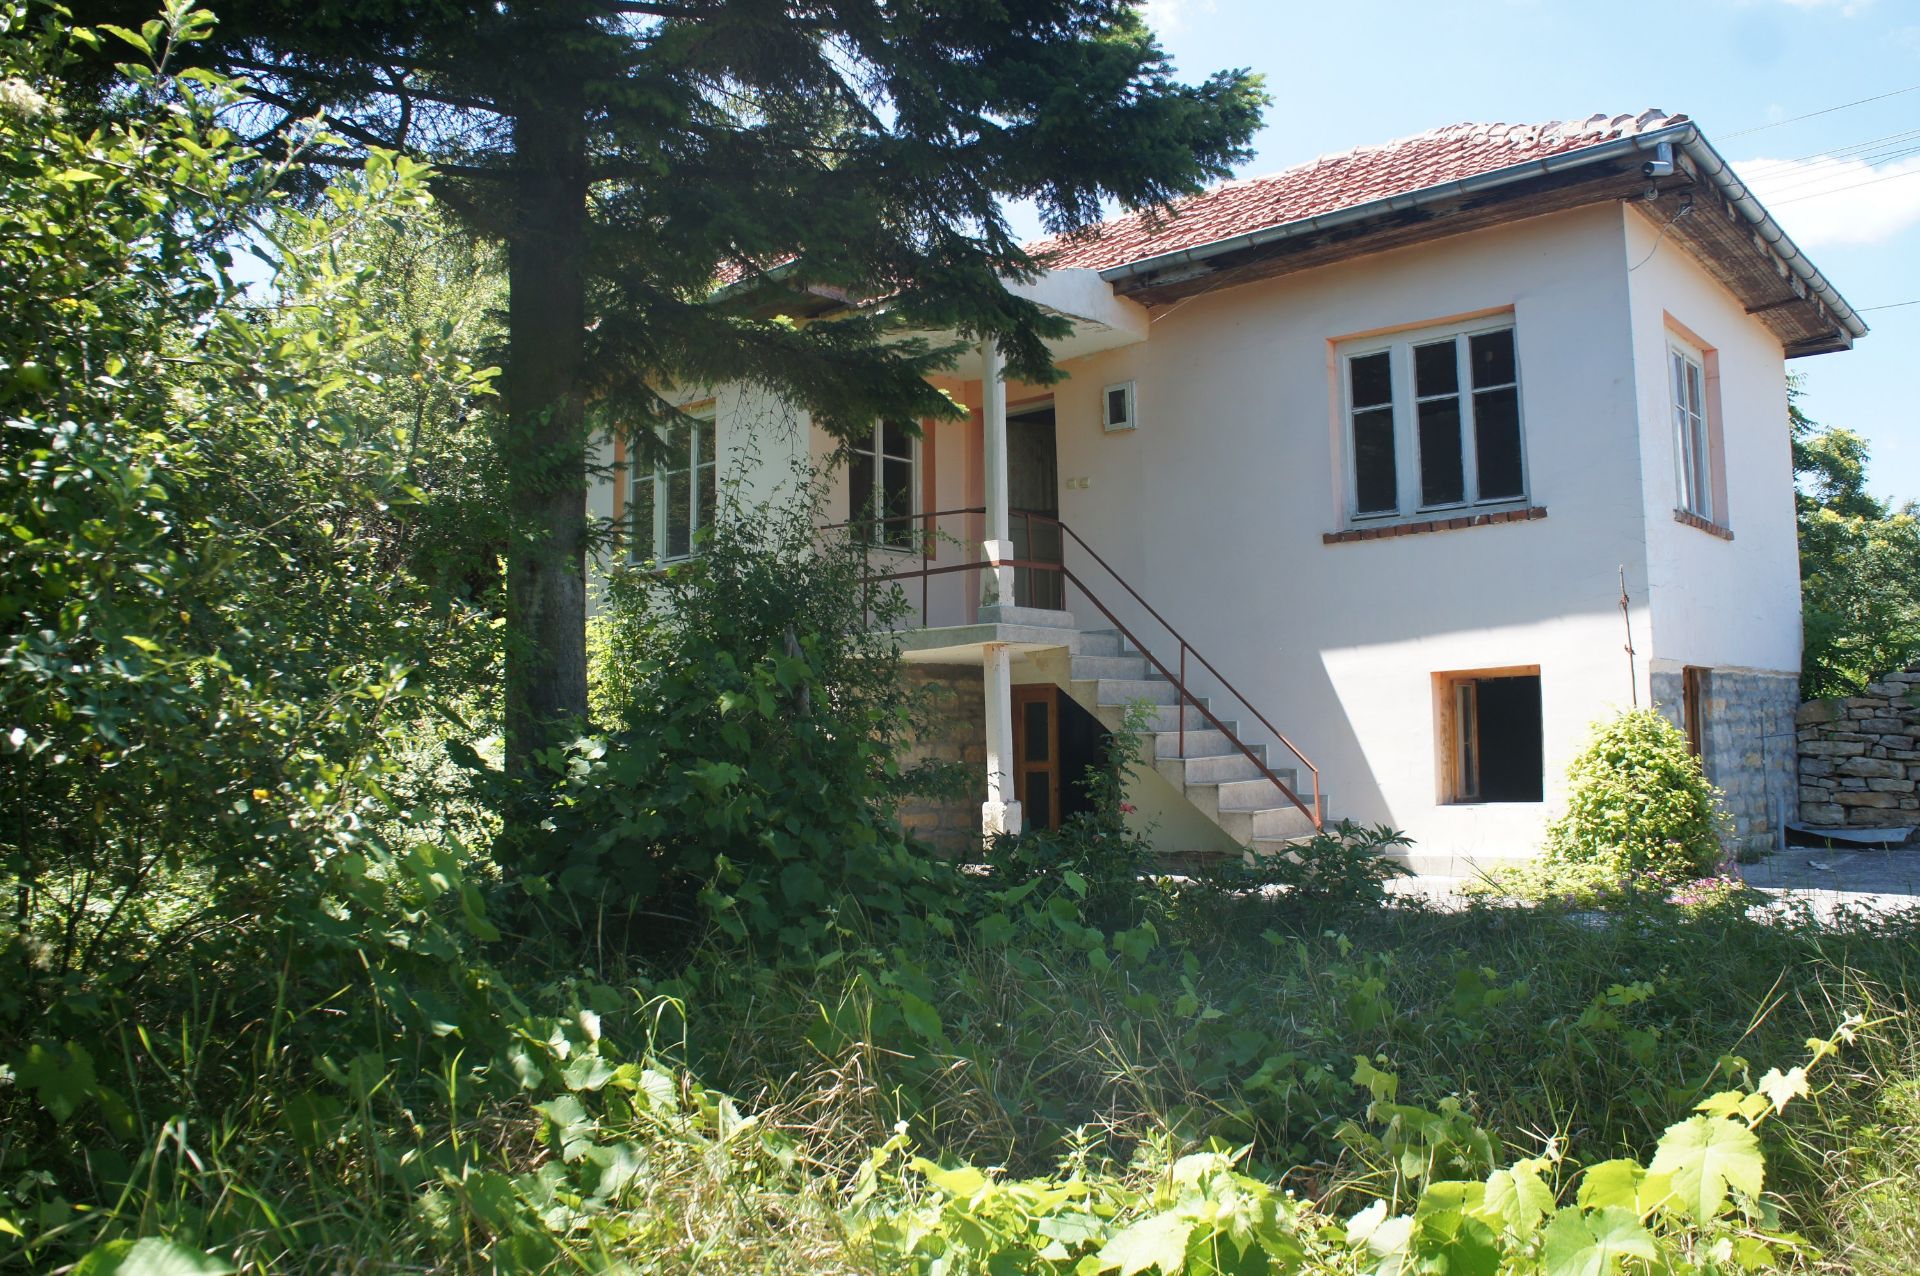 IMMACULATE Freehold Home and Land NR Veliko Tarnovo, Bulgaria - Image 4 of 29